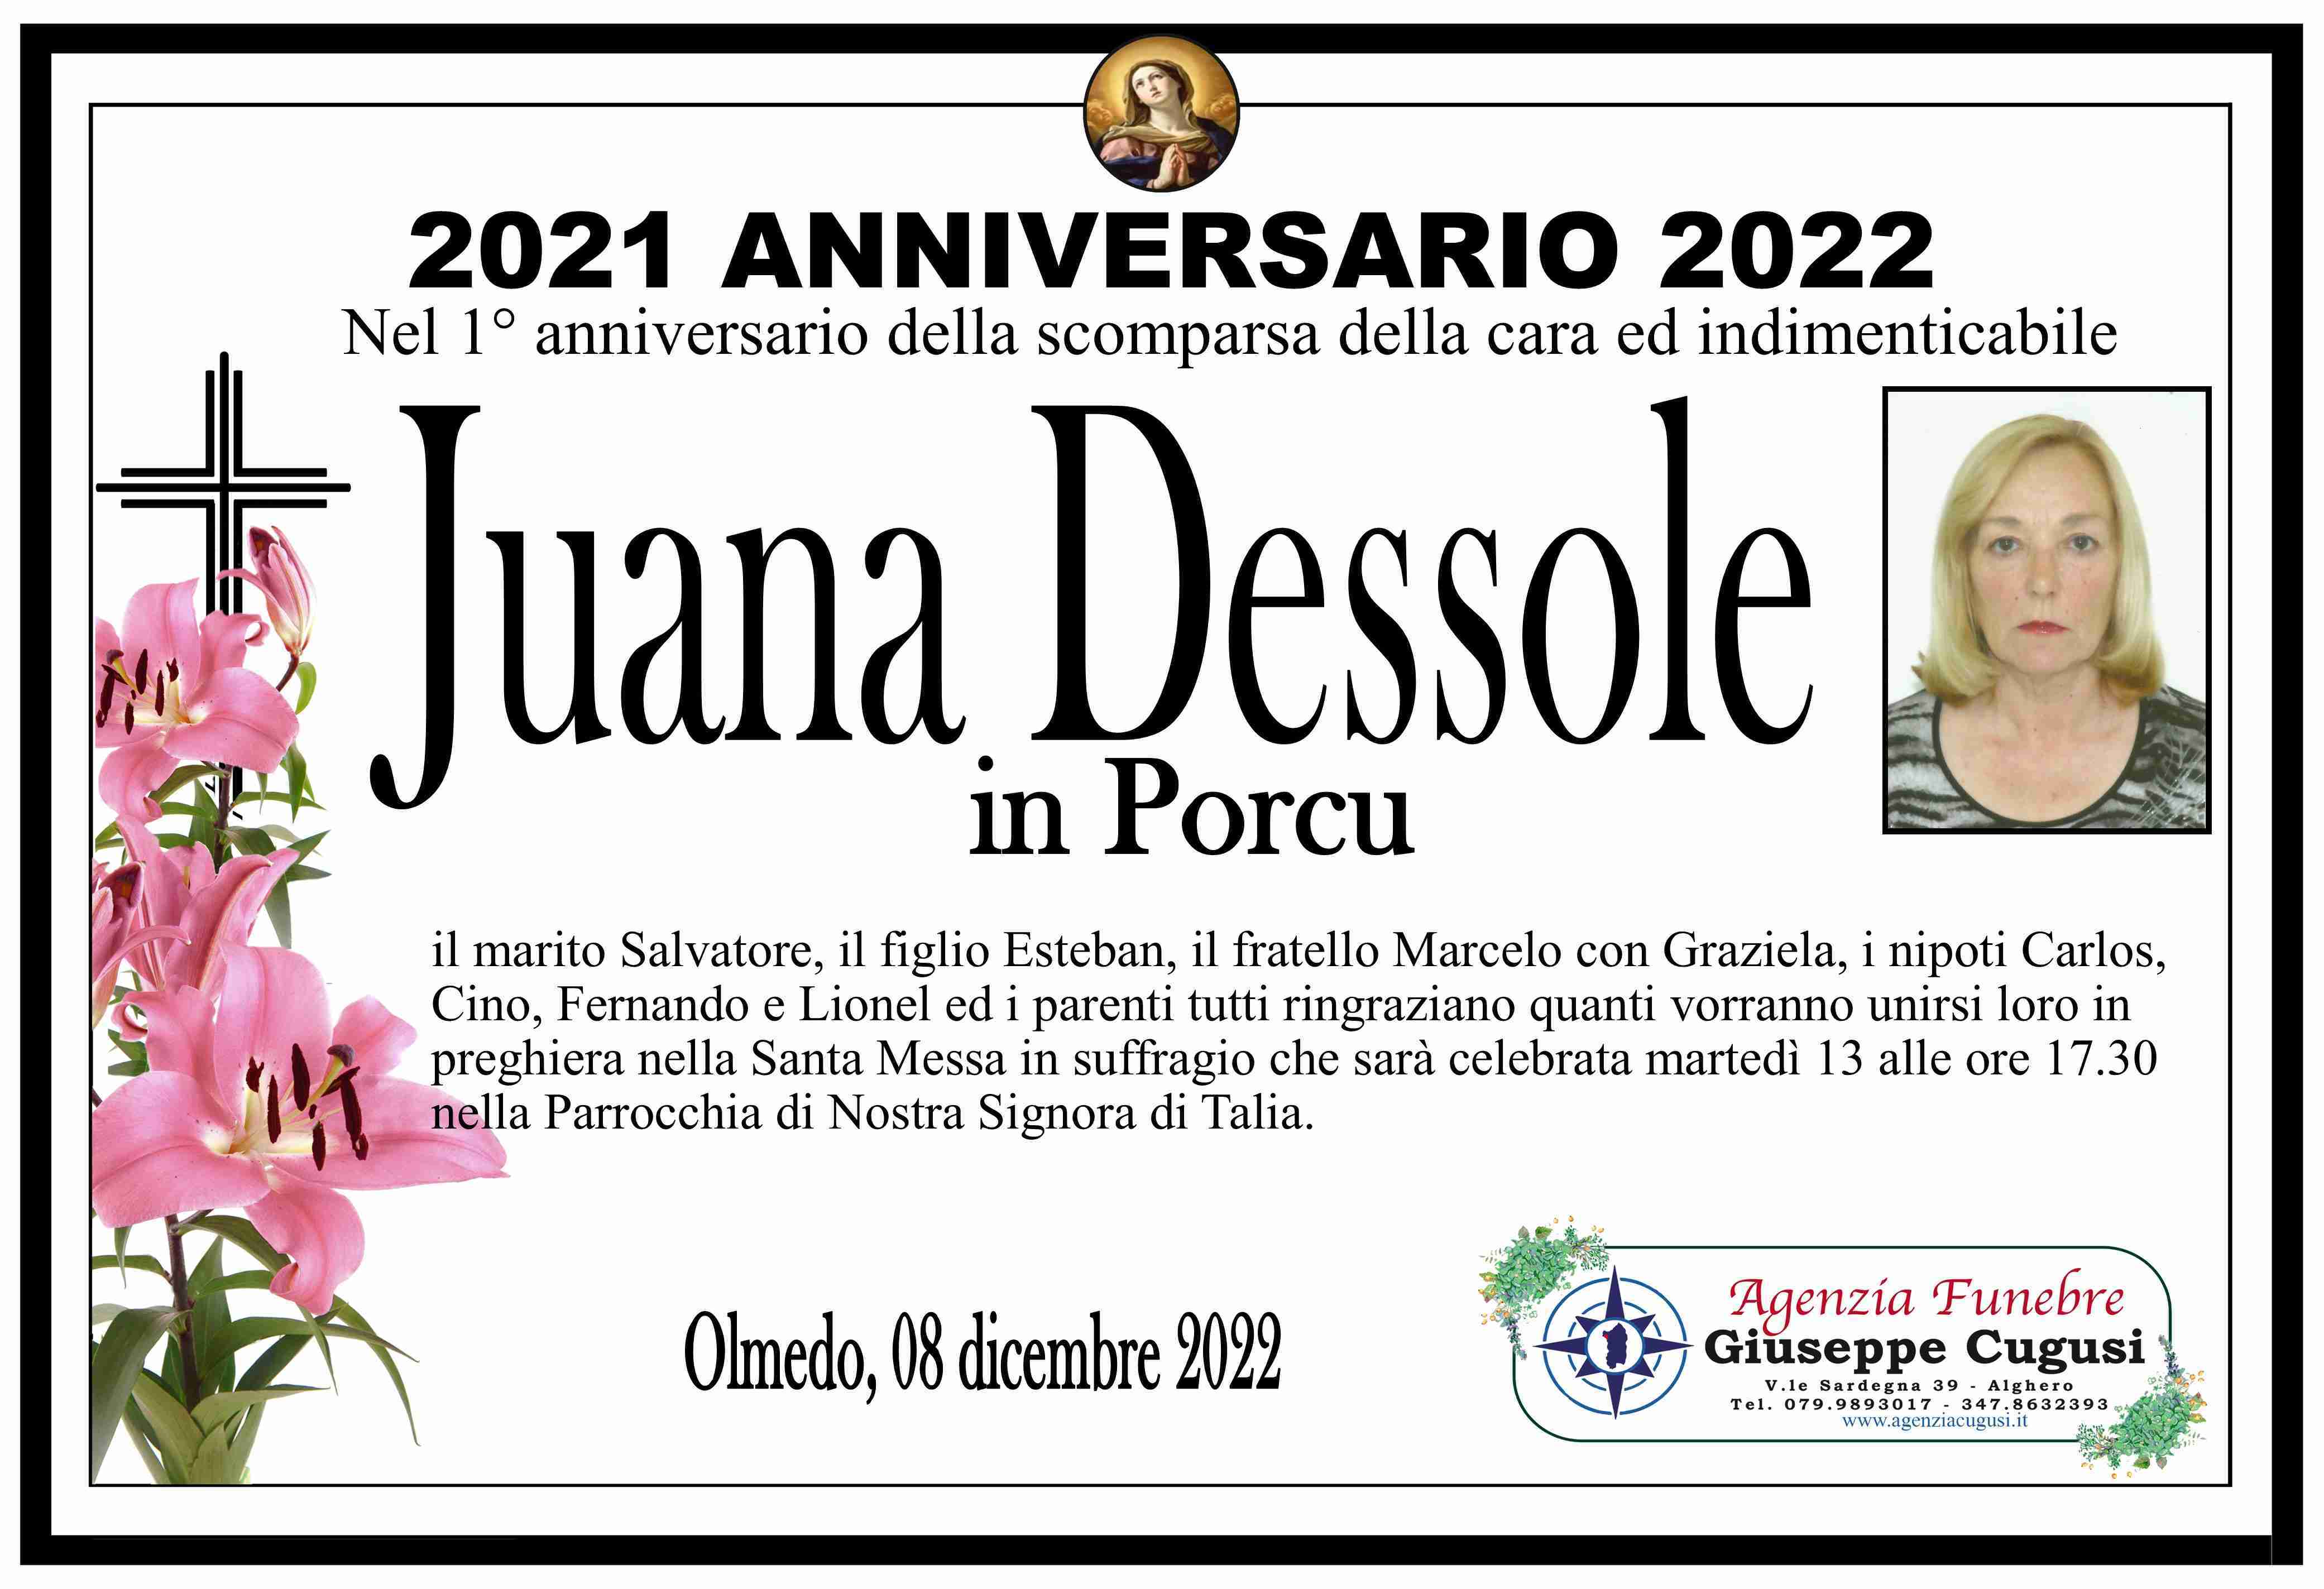 Juana Dessole